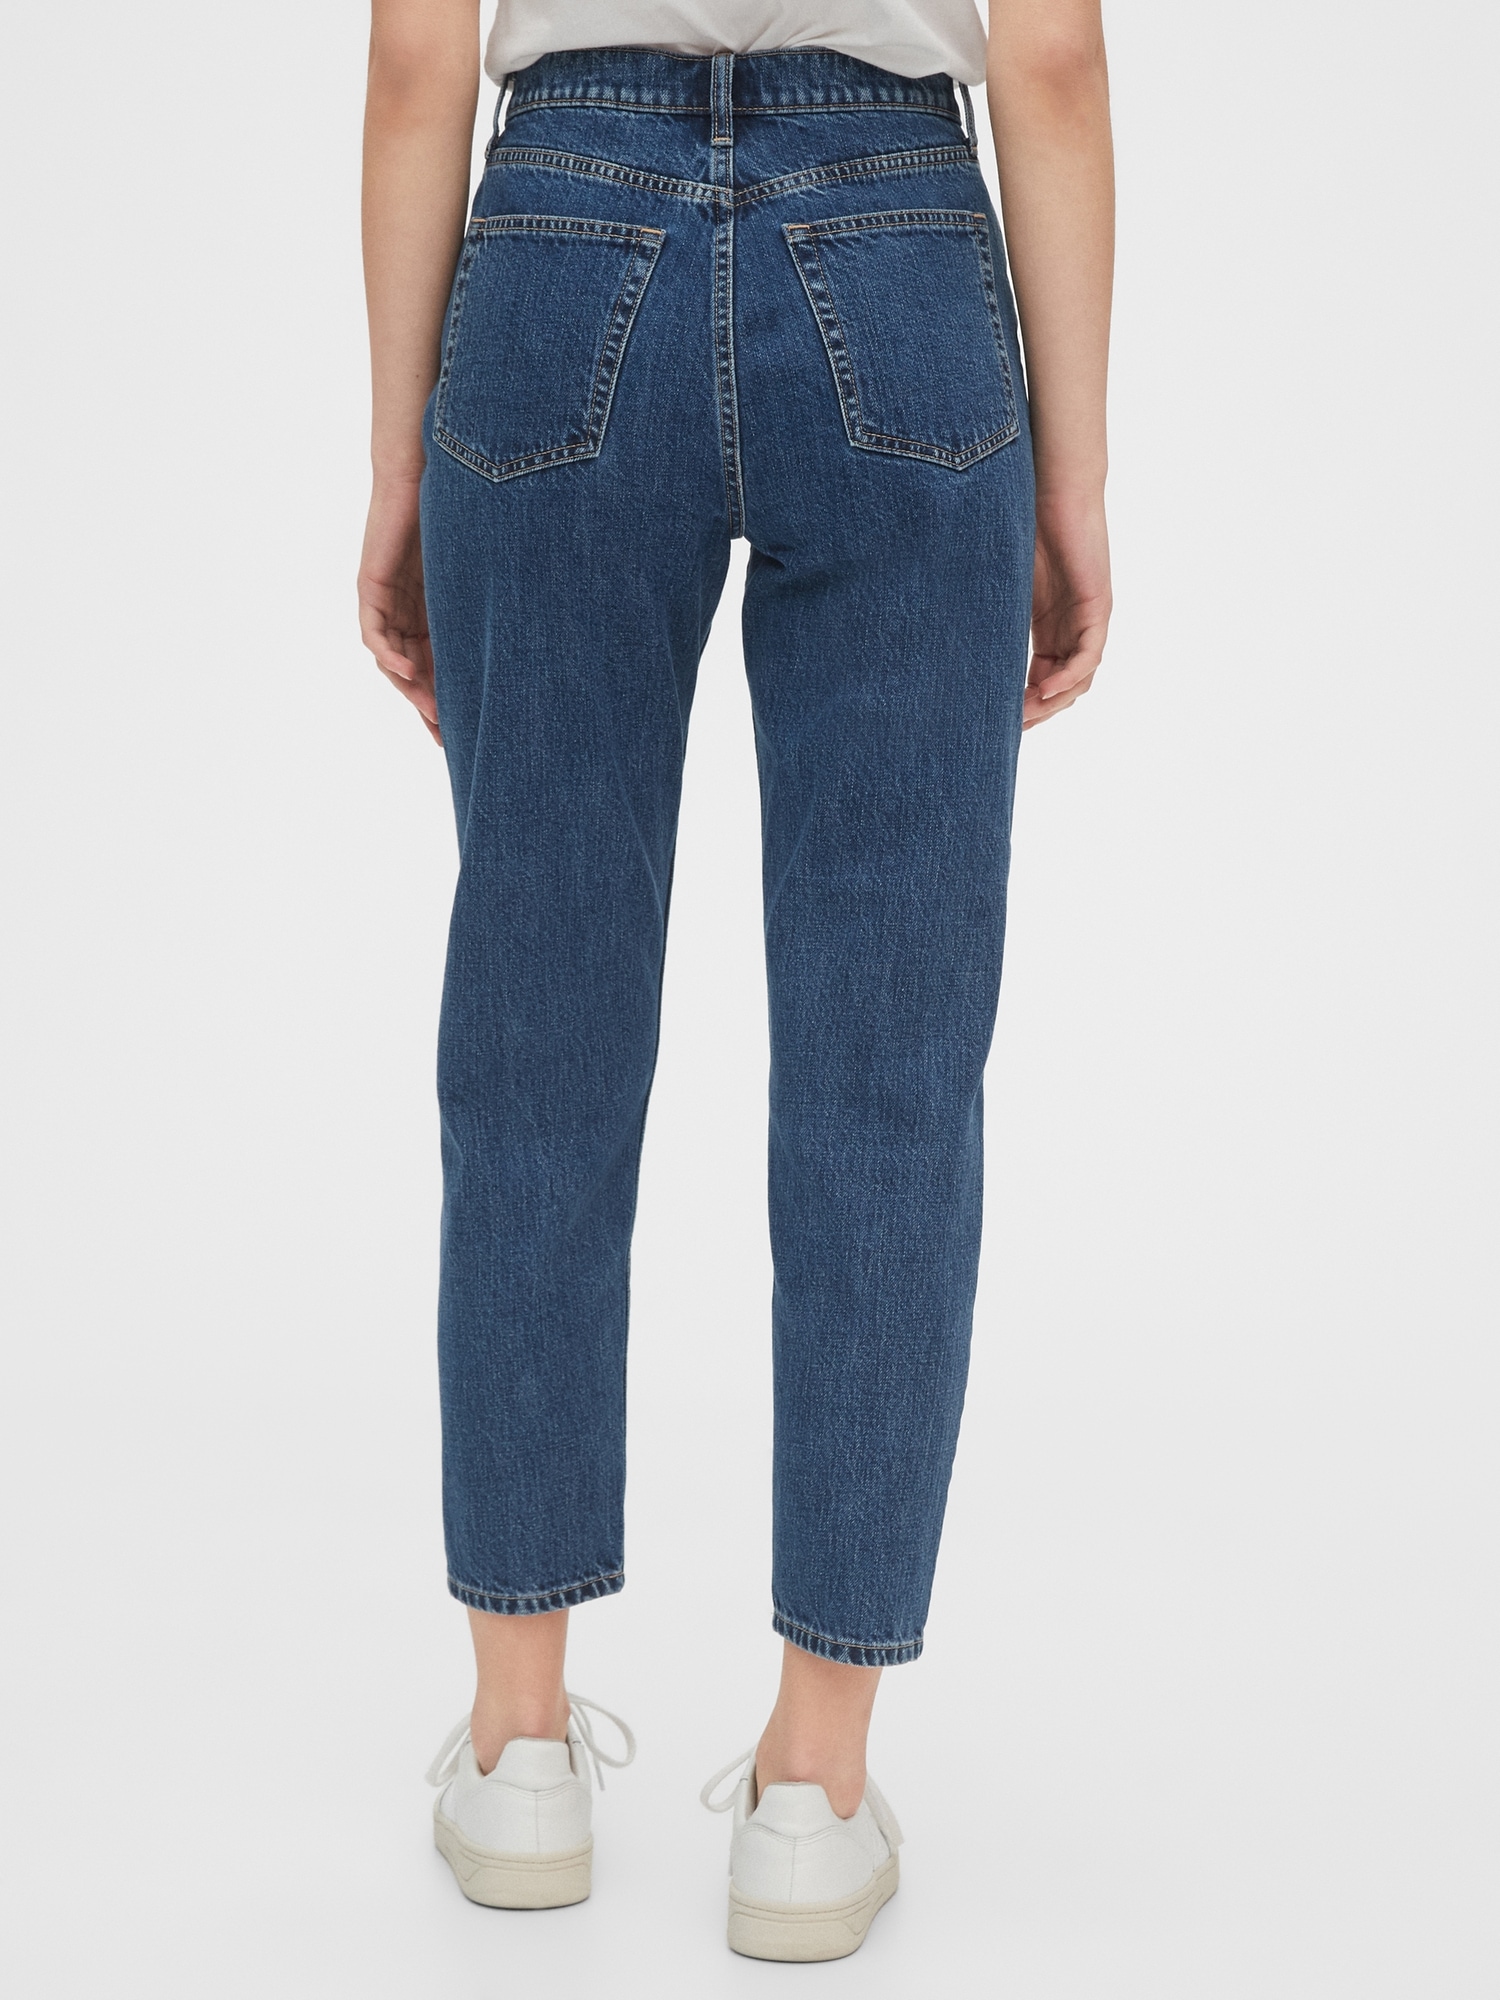 Gap Tall Womens Jeans 2023